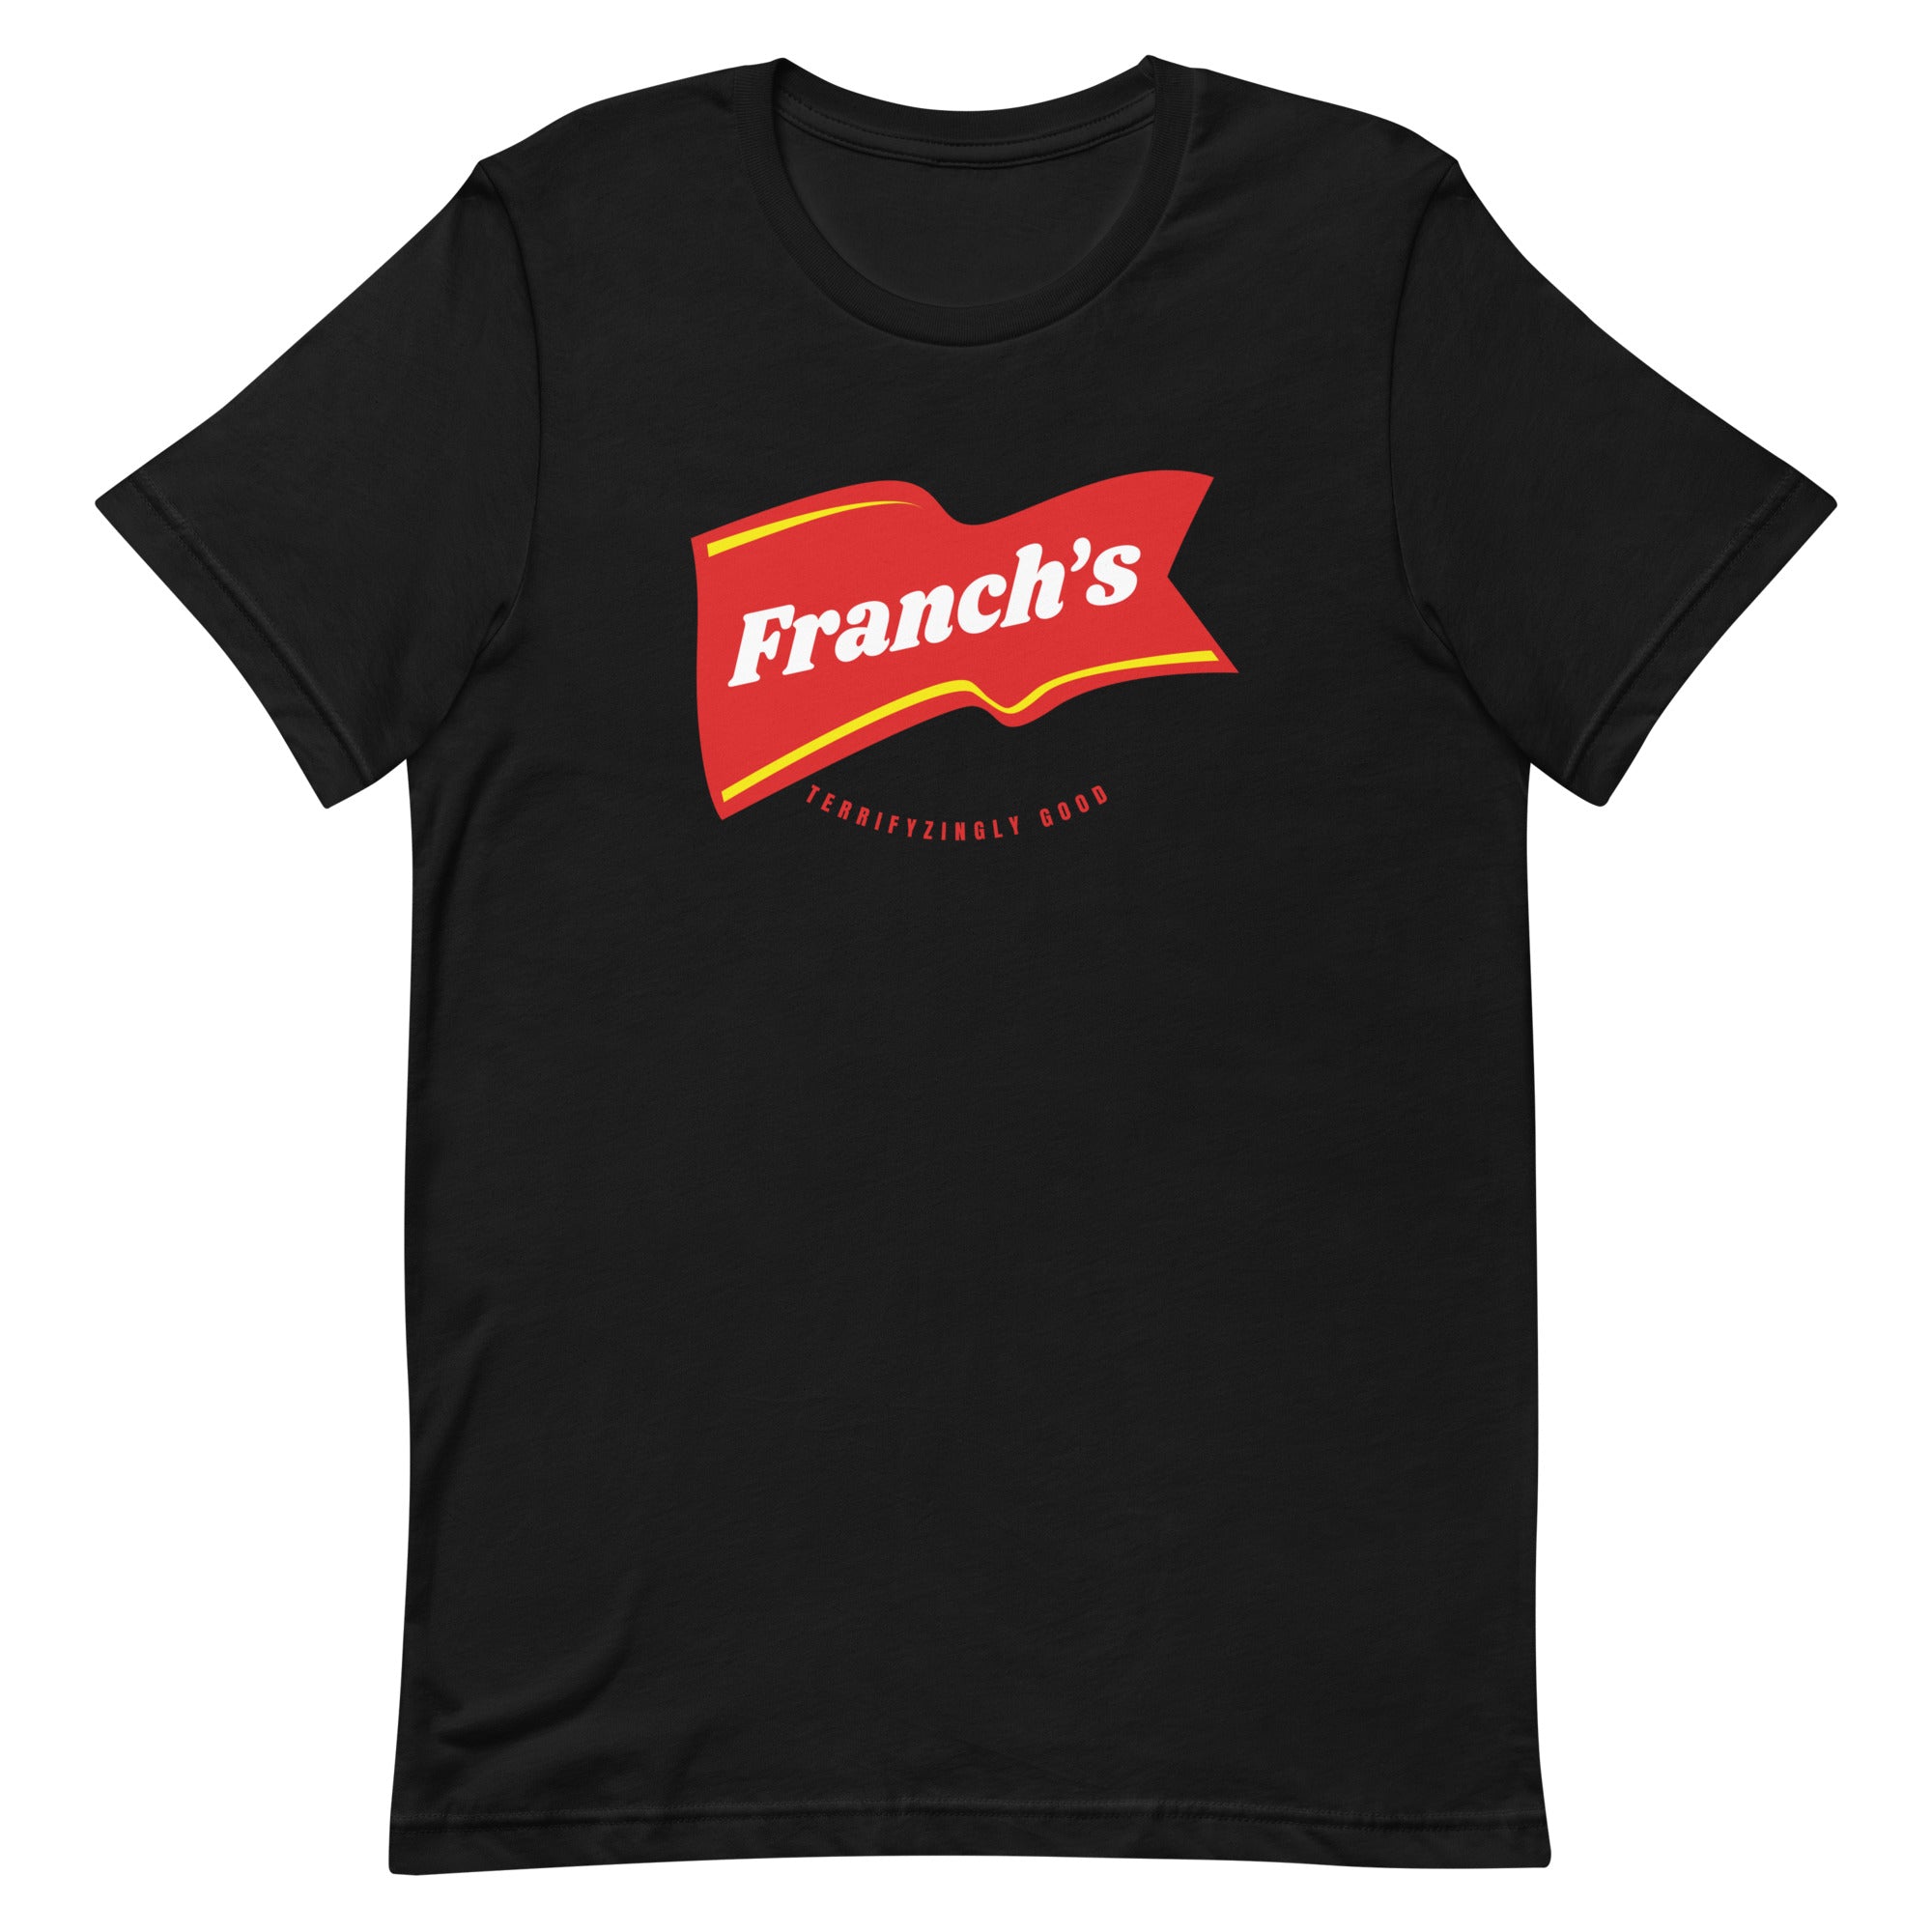 Franch's Unisex T-Shirt